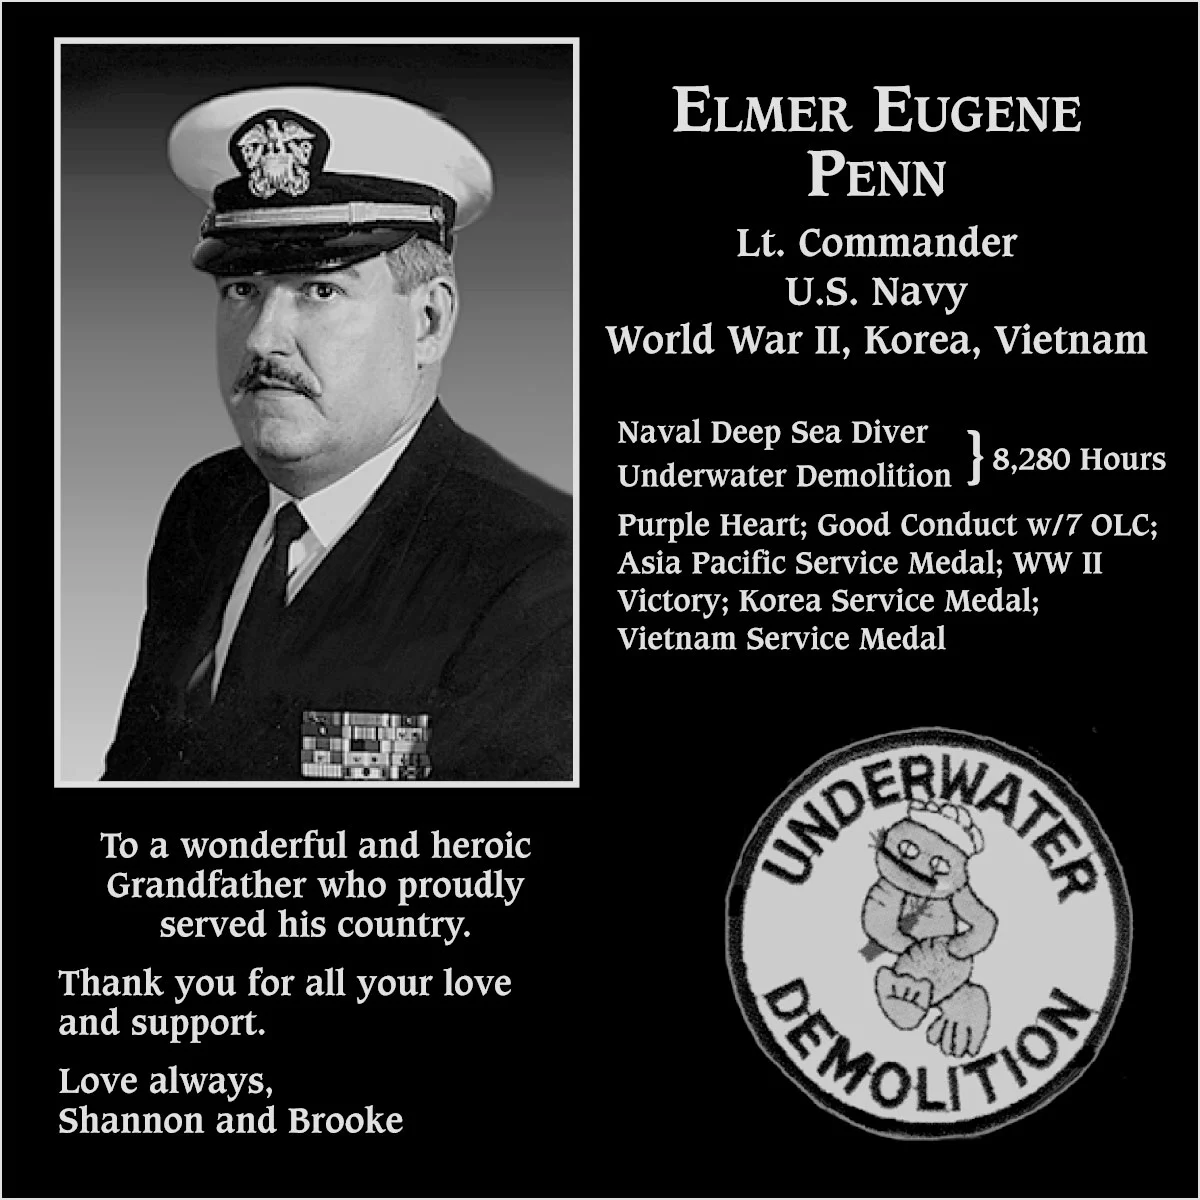 Elmer Eugene Penn